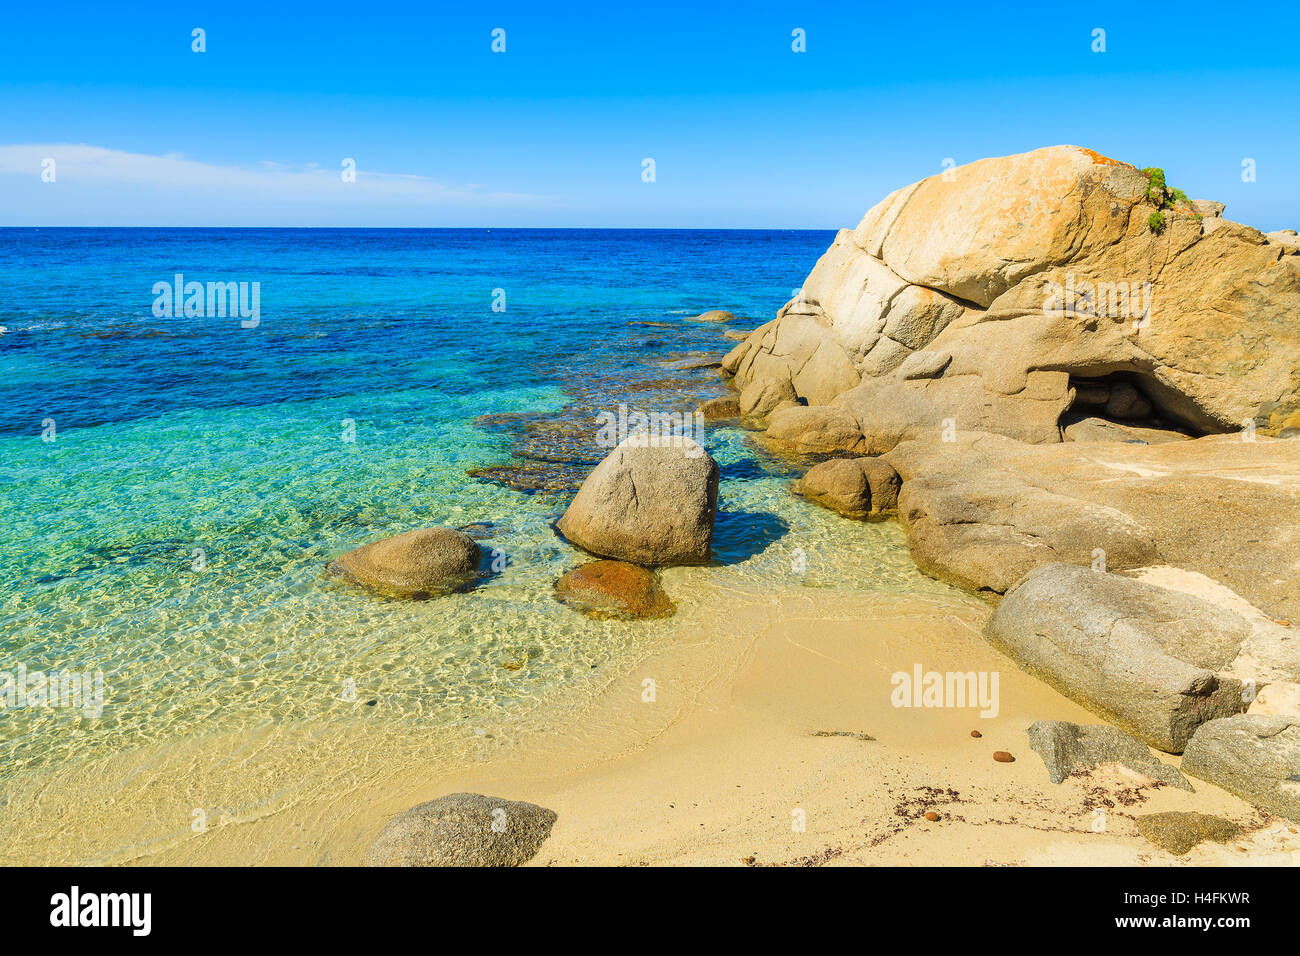 Steinen im türkisfarbenen Meerwasser am idyllischen Strand, Insel Sardinien, Italien Stockfoto